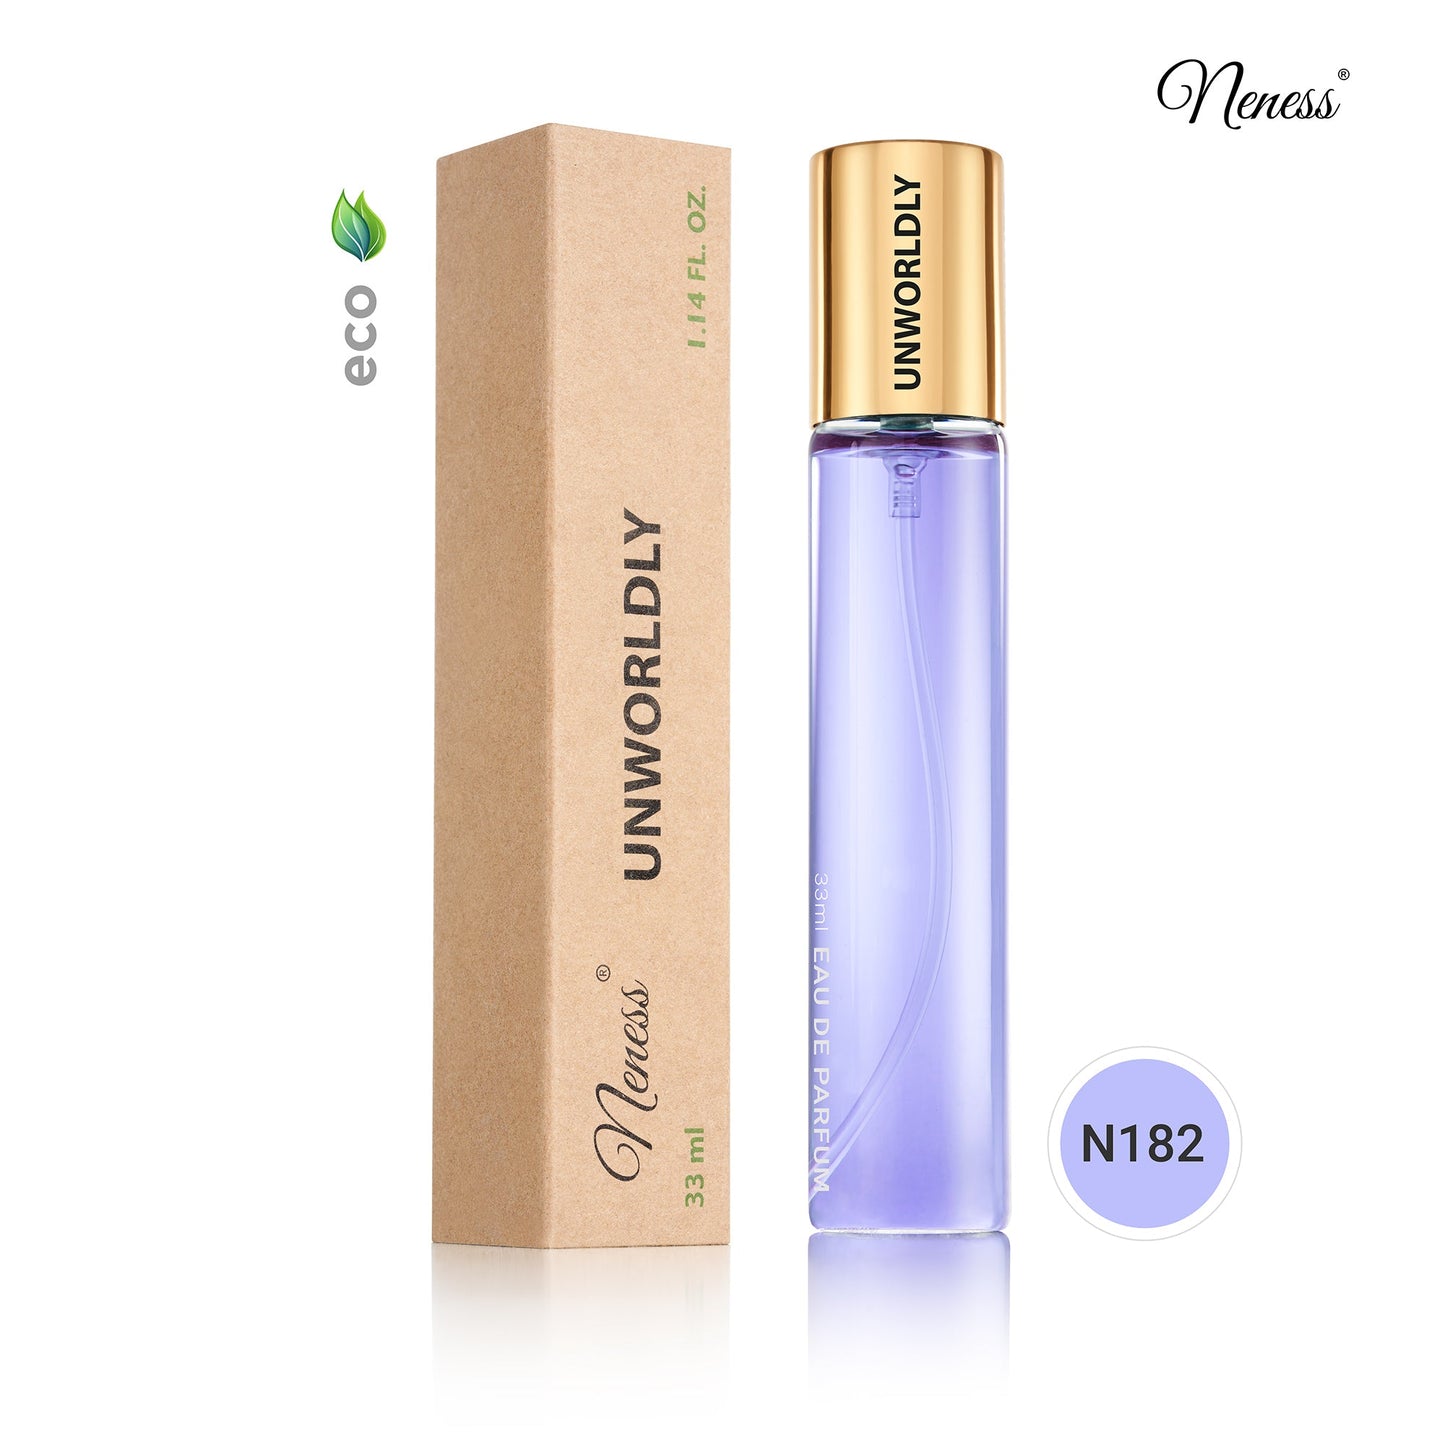 N182. Neness Unworldly - 33 ml - Parfum voor vrouwen